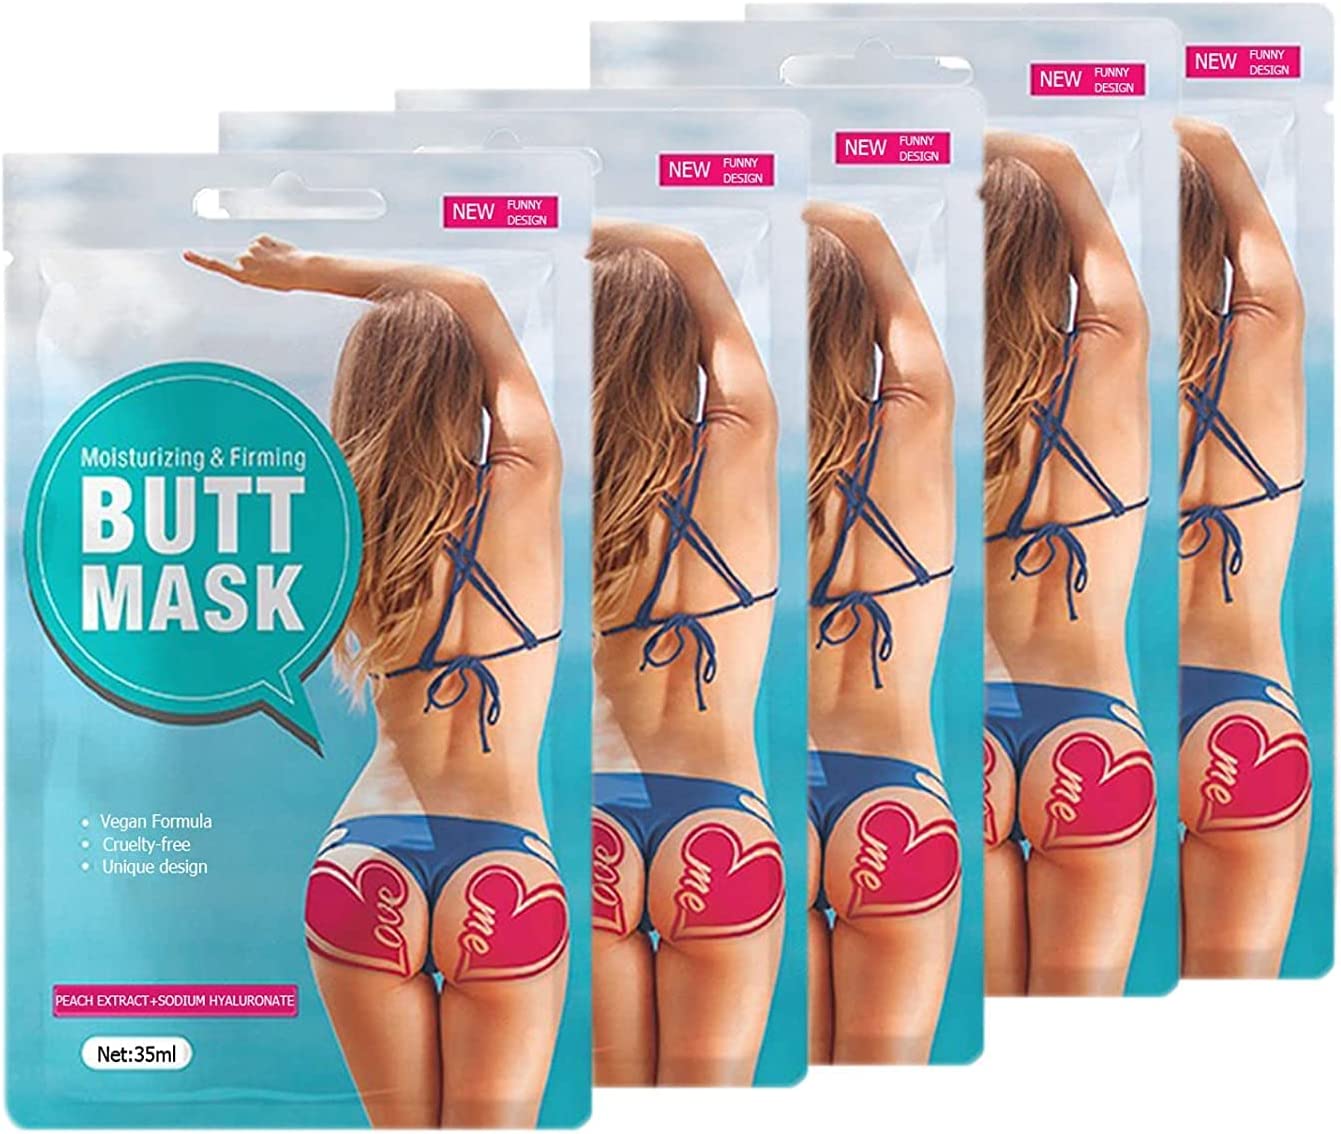 5 opakowań z arkuszem maski na skórę, aby wzmocnić dźwięk nawilżający i odmłodzić skórę tyłek Elitzia ETBS212 Ciemne różowe